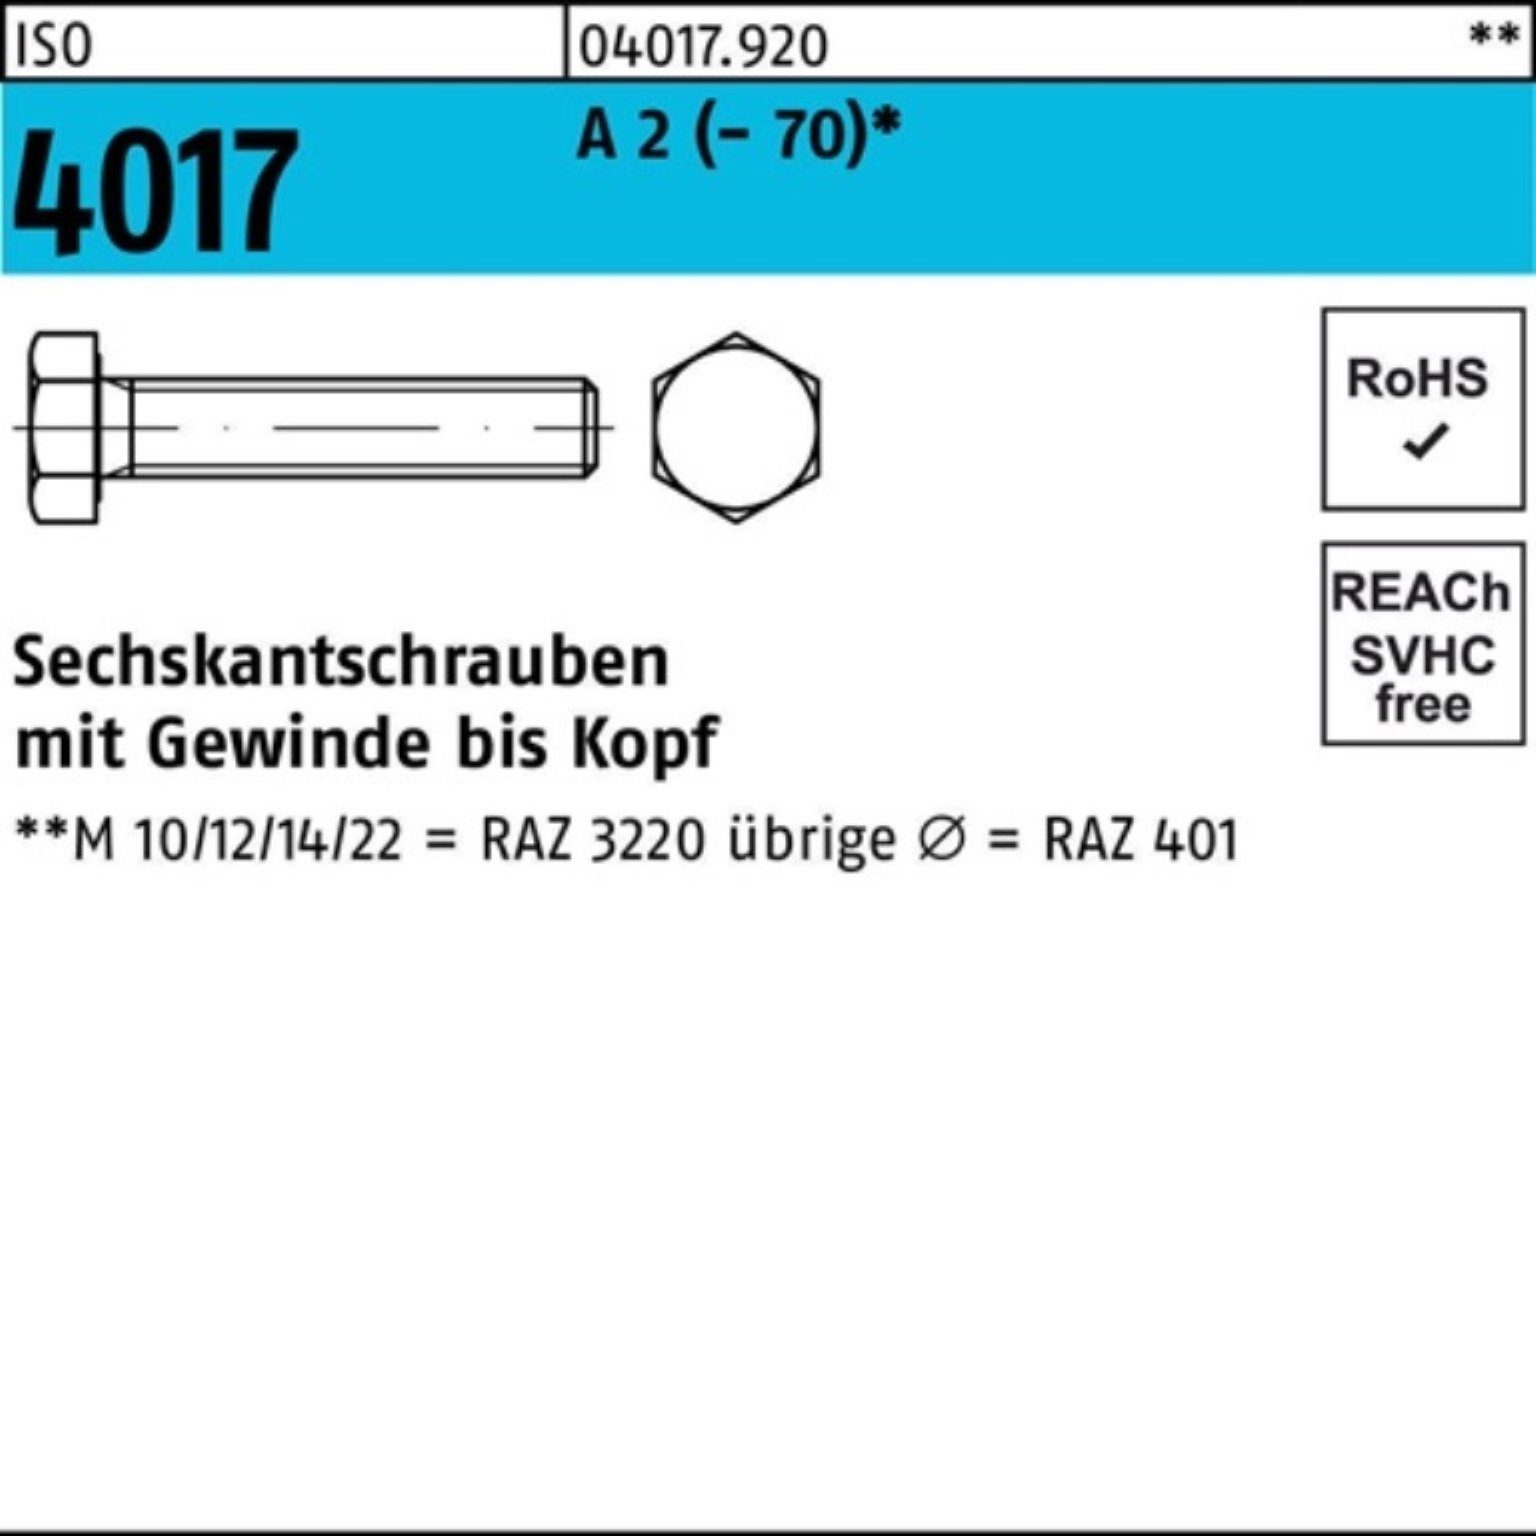 Bufab Sechskantschraube 100er Pack Sechskantschraube ISO 4017 VG M24x 150 A 2 (70) 1 Stück